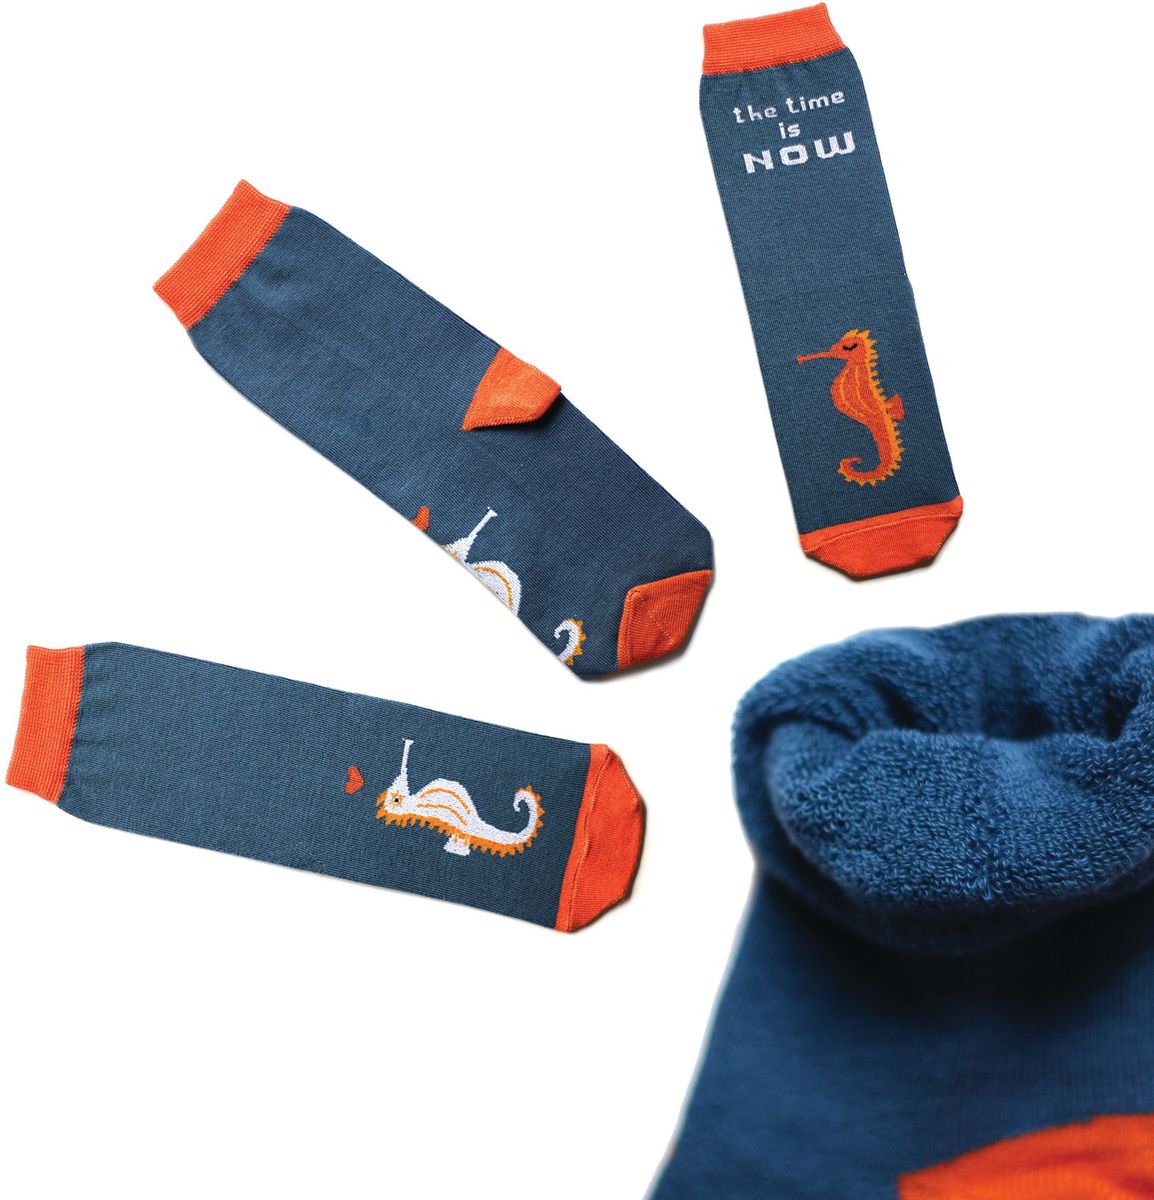 Носки детские Big Bang Socks, цвет:темно-бирюзовый, оранжевый. ca1913. Размер 30/34